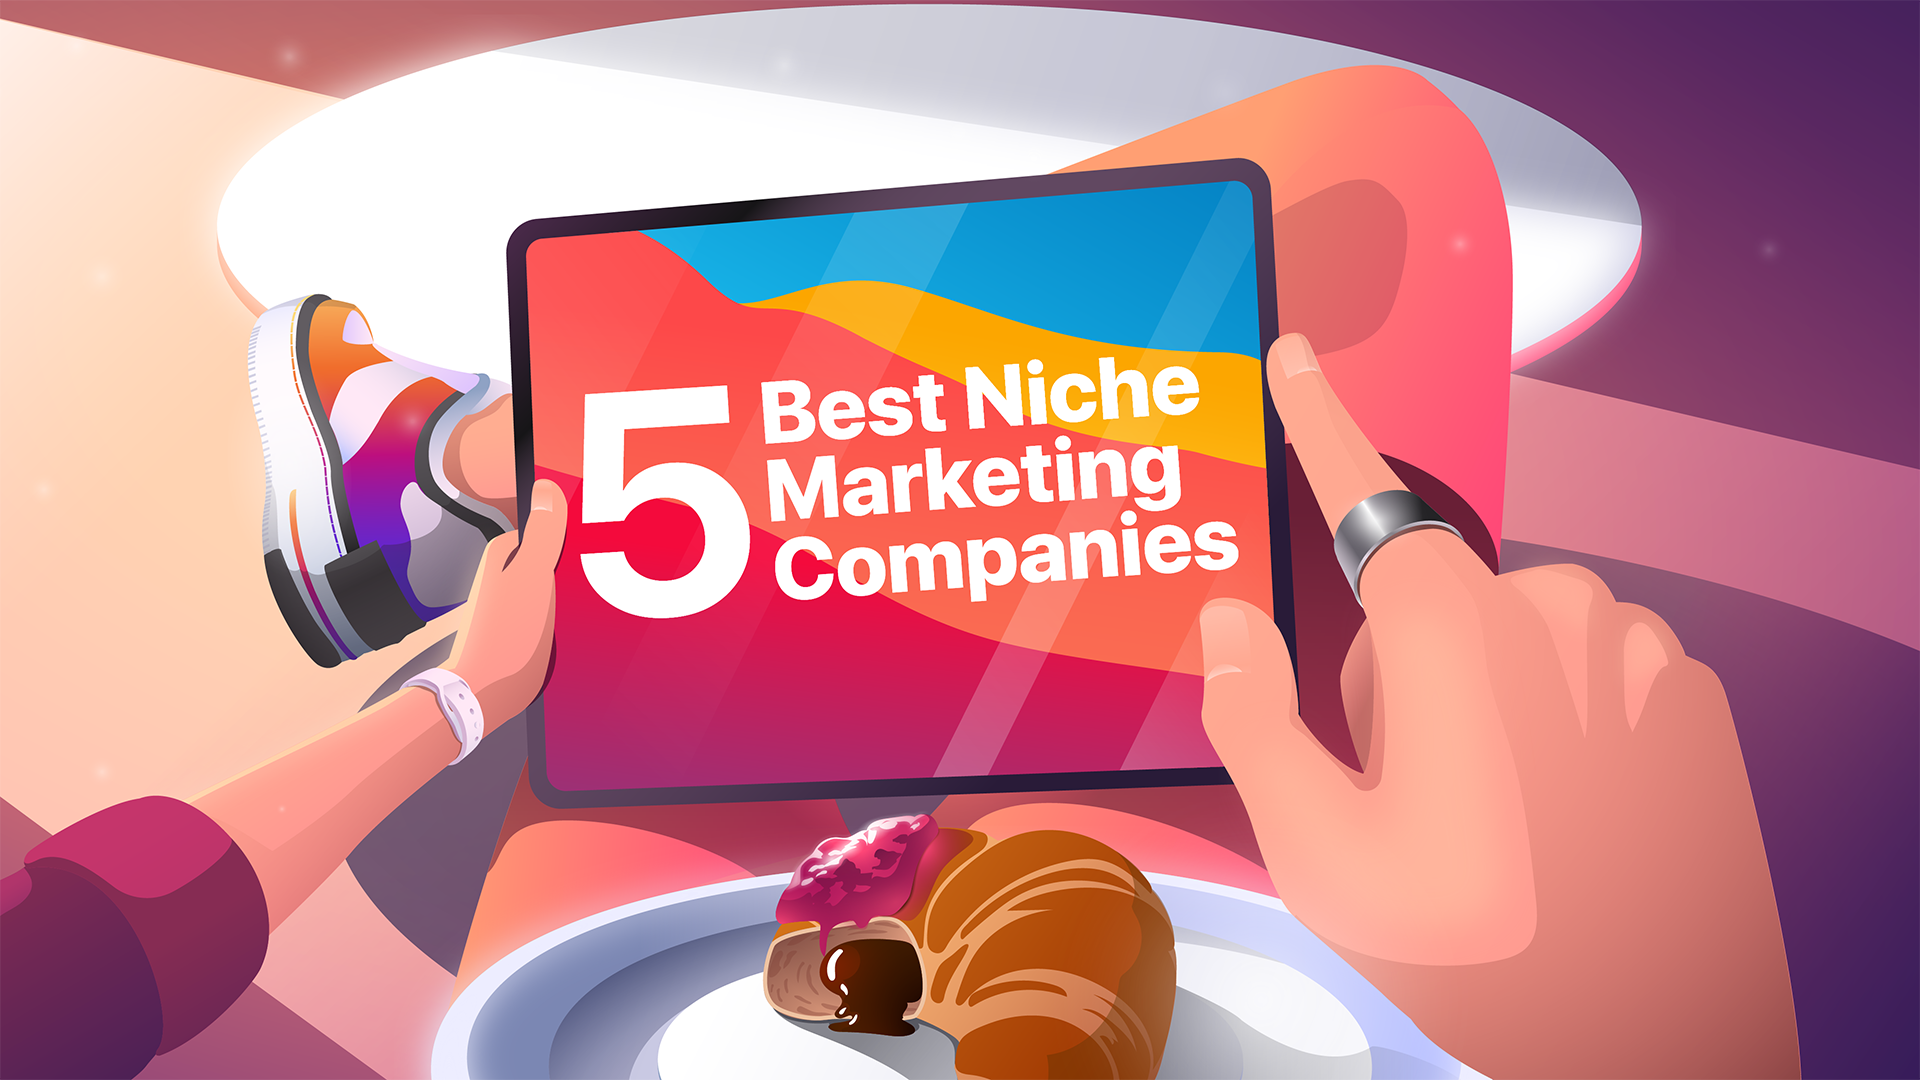 Best Niche Marketing Companies